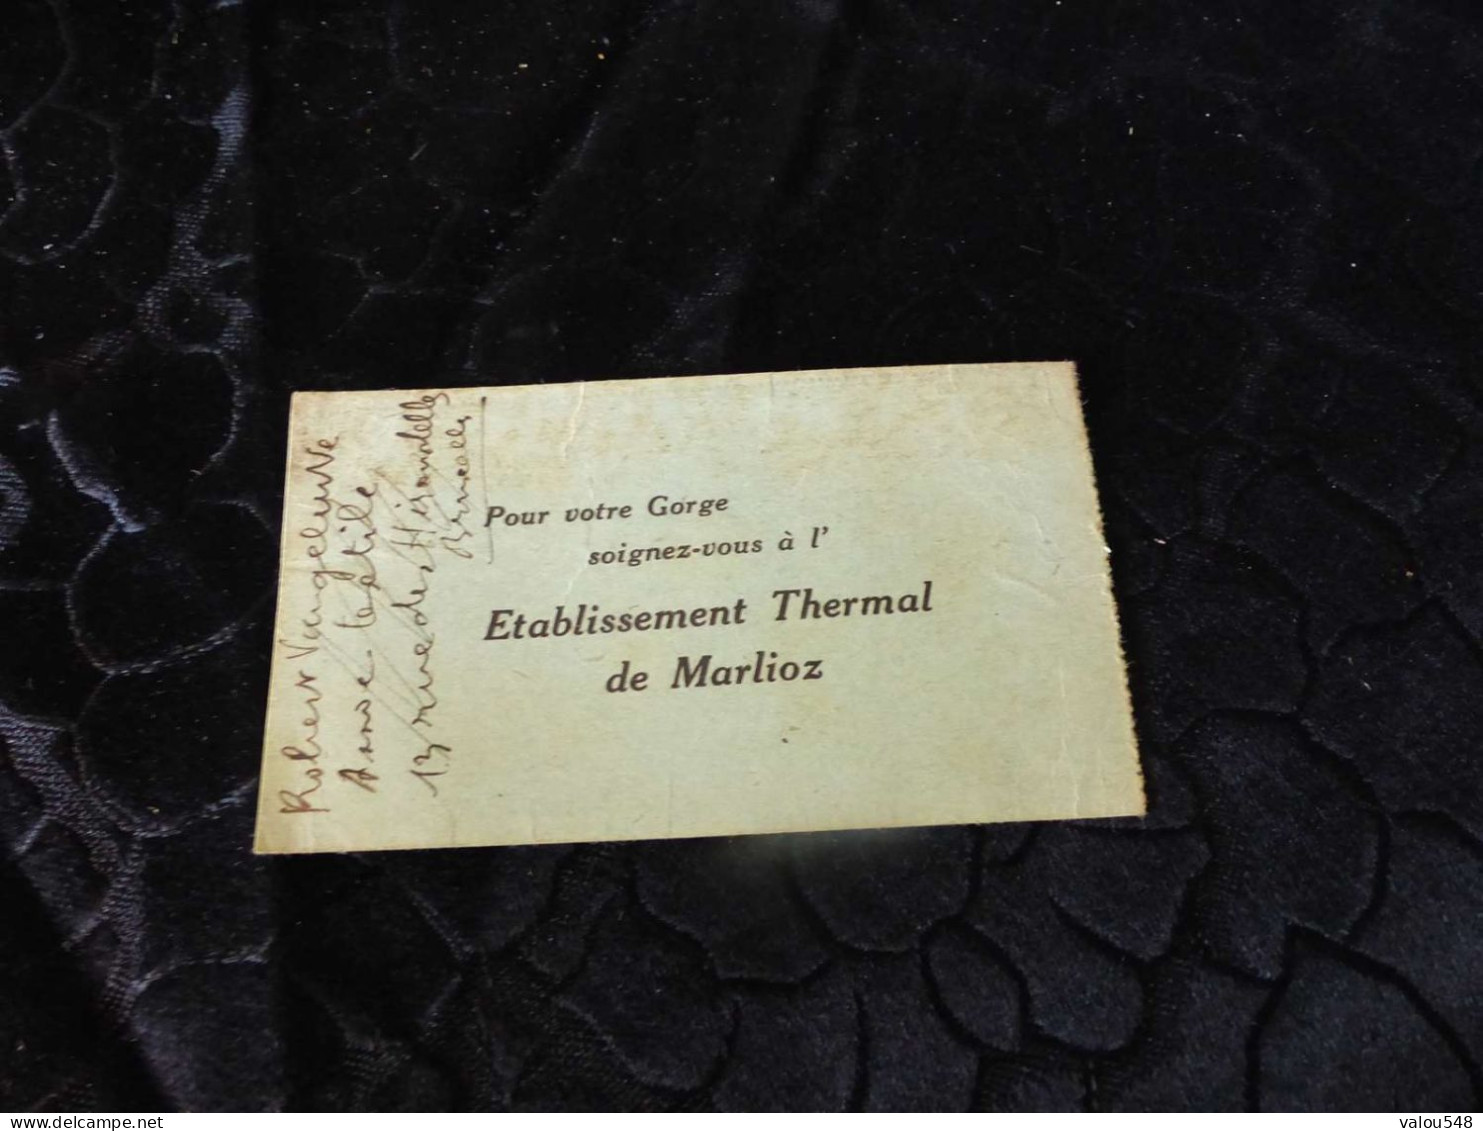 VP-62 , Carte D'abonnement , Etablissement De Maarlioz, Aix Les Bains, Eaux Sulfureuse, 1932 - Membership Cards